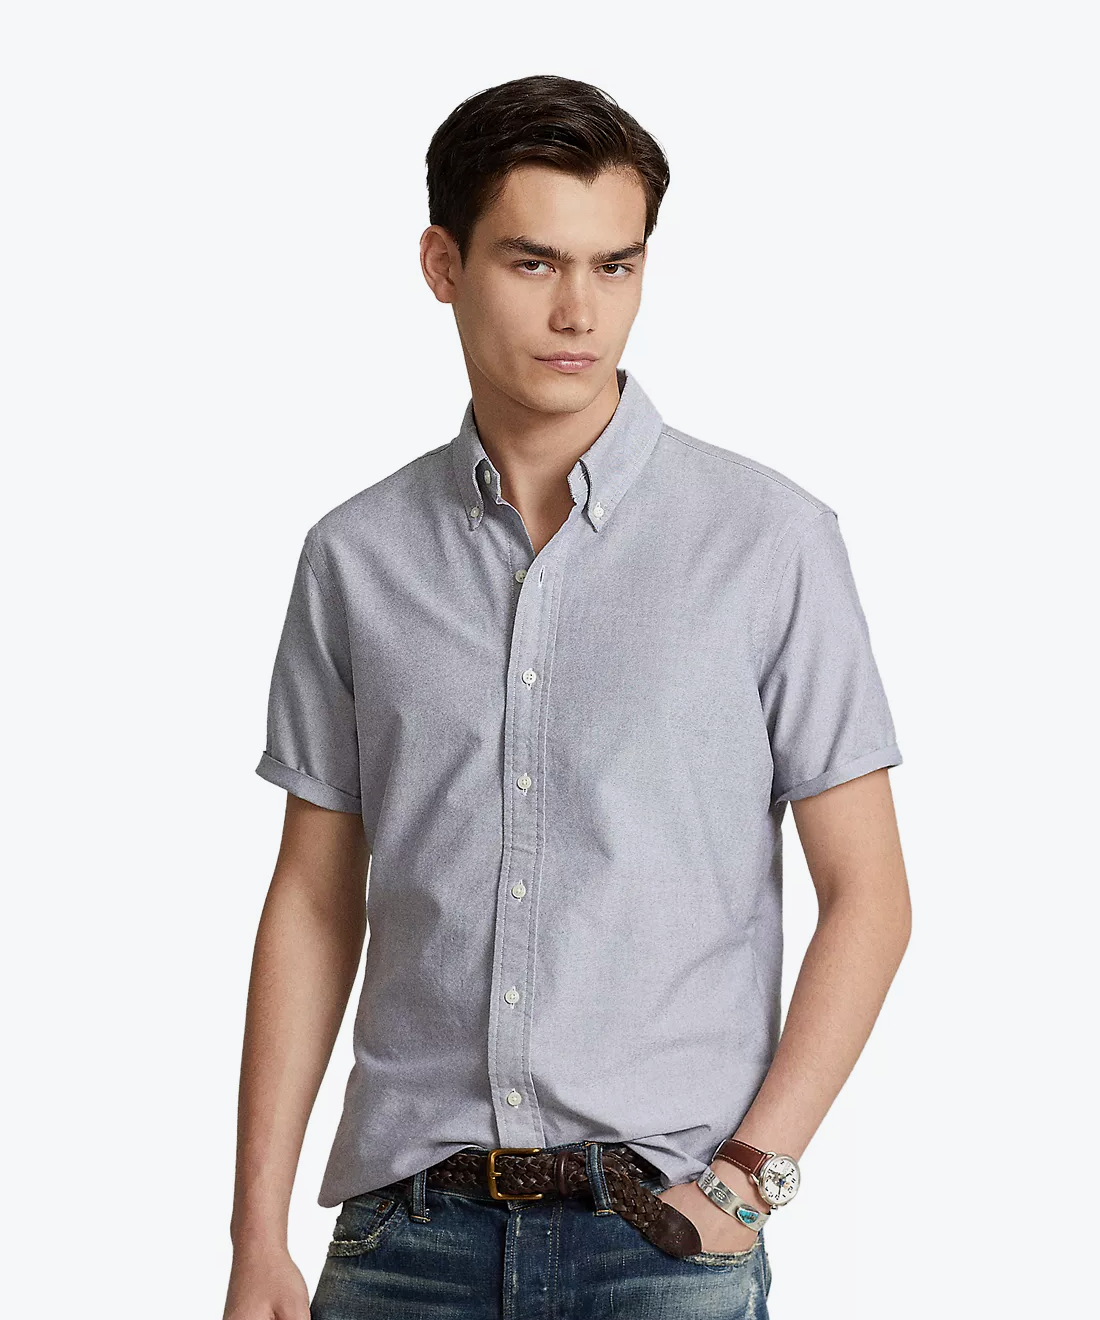 Cotton short sleeve shirt